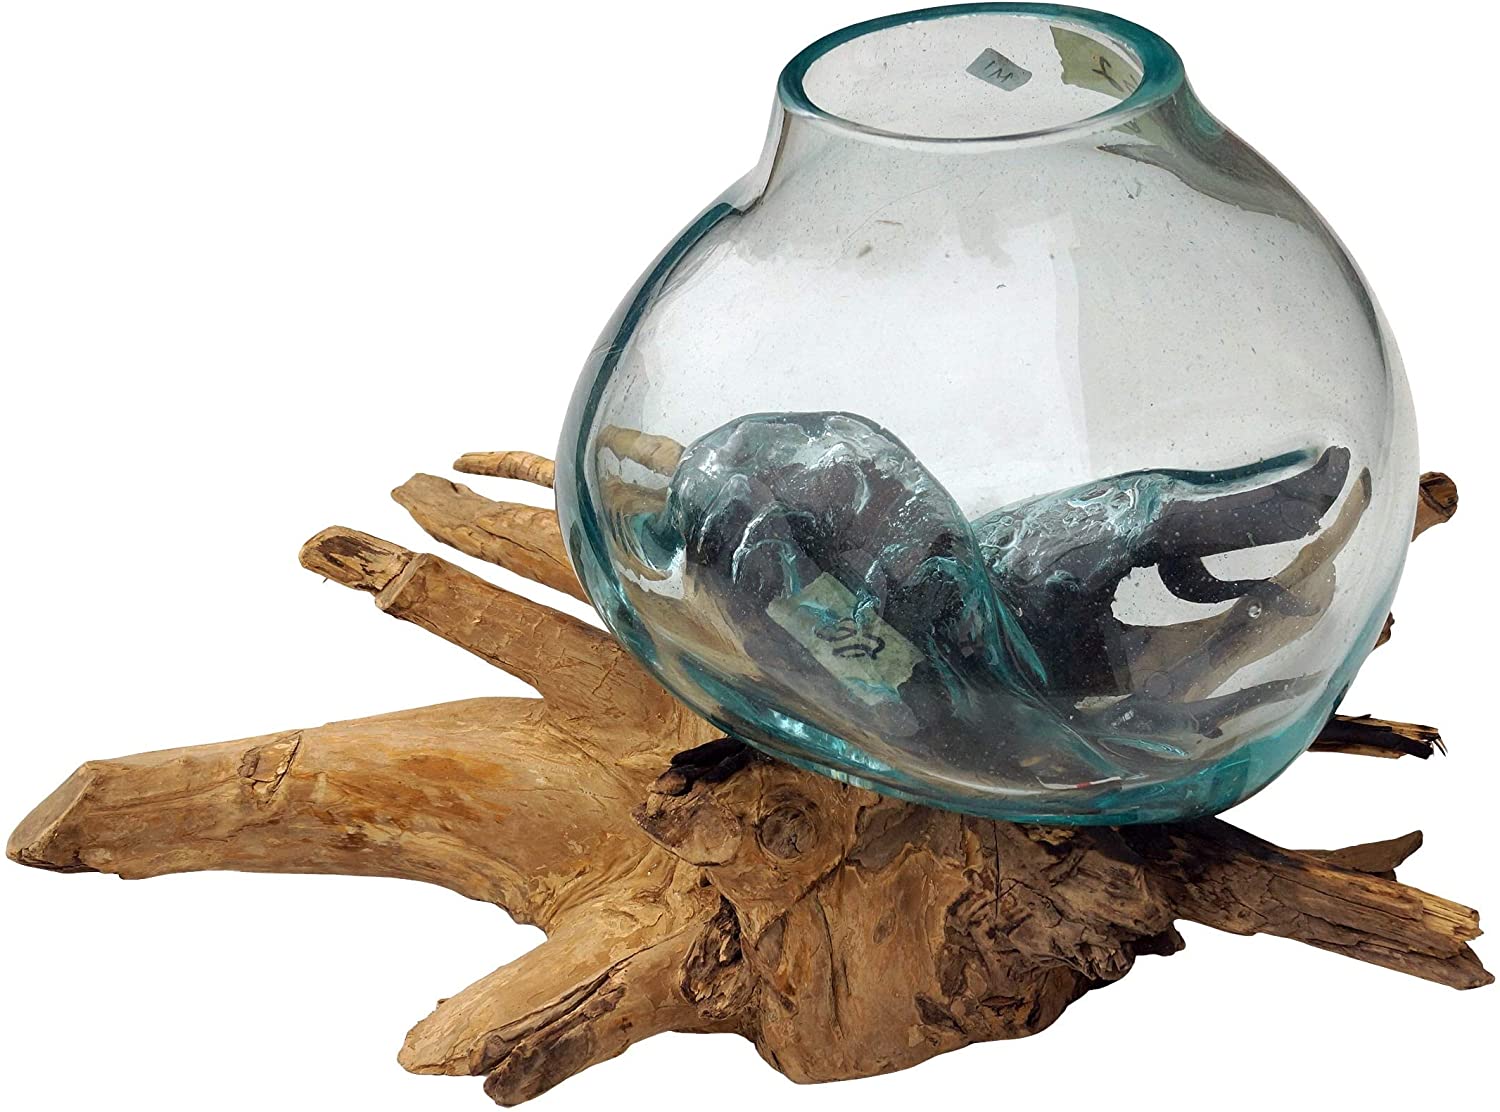 GURU SHOP Burl Wood Vase – 1 x Glass Diameter up to 10 cm, Brown, Vases & Flower Pots